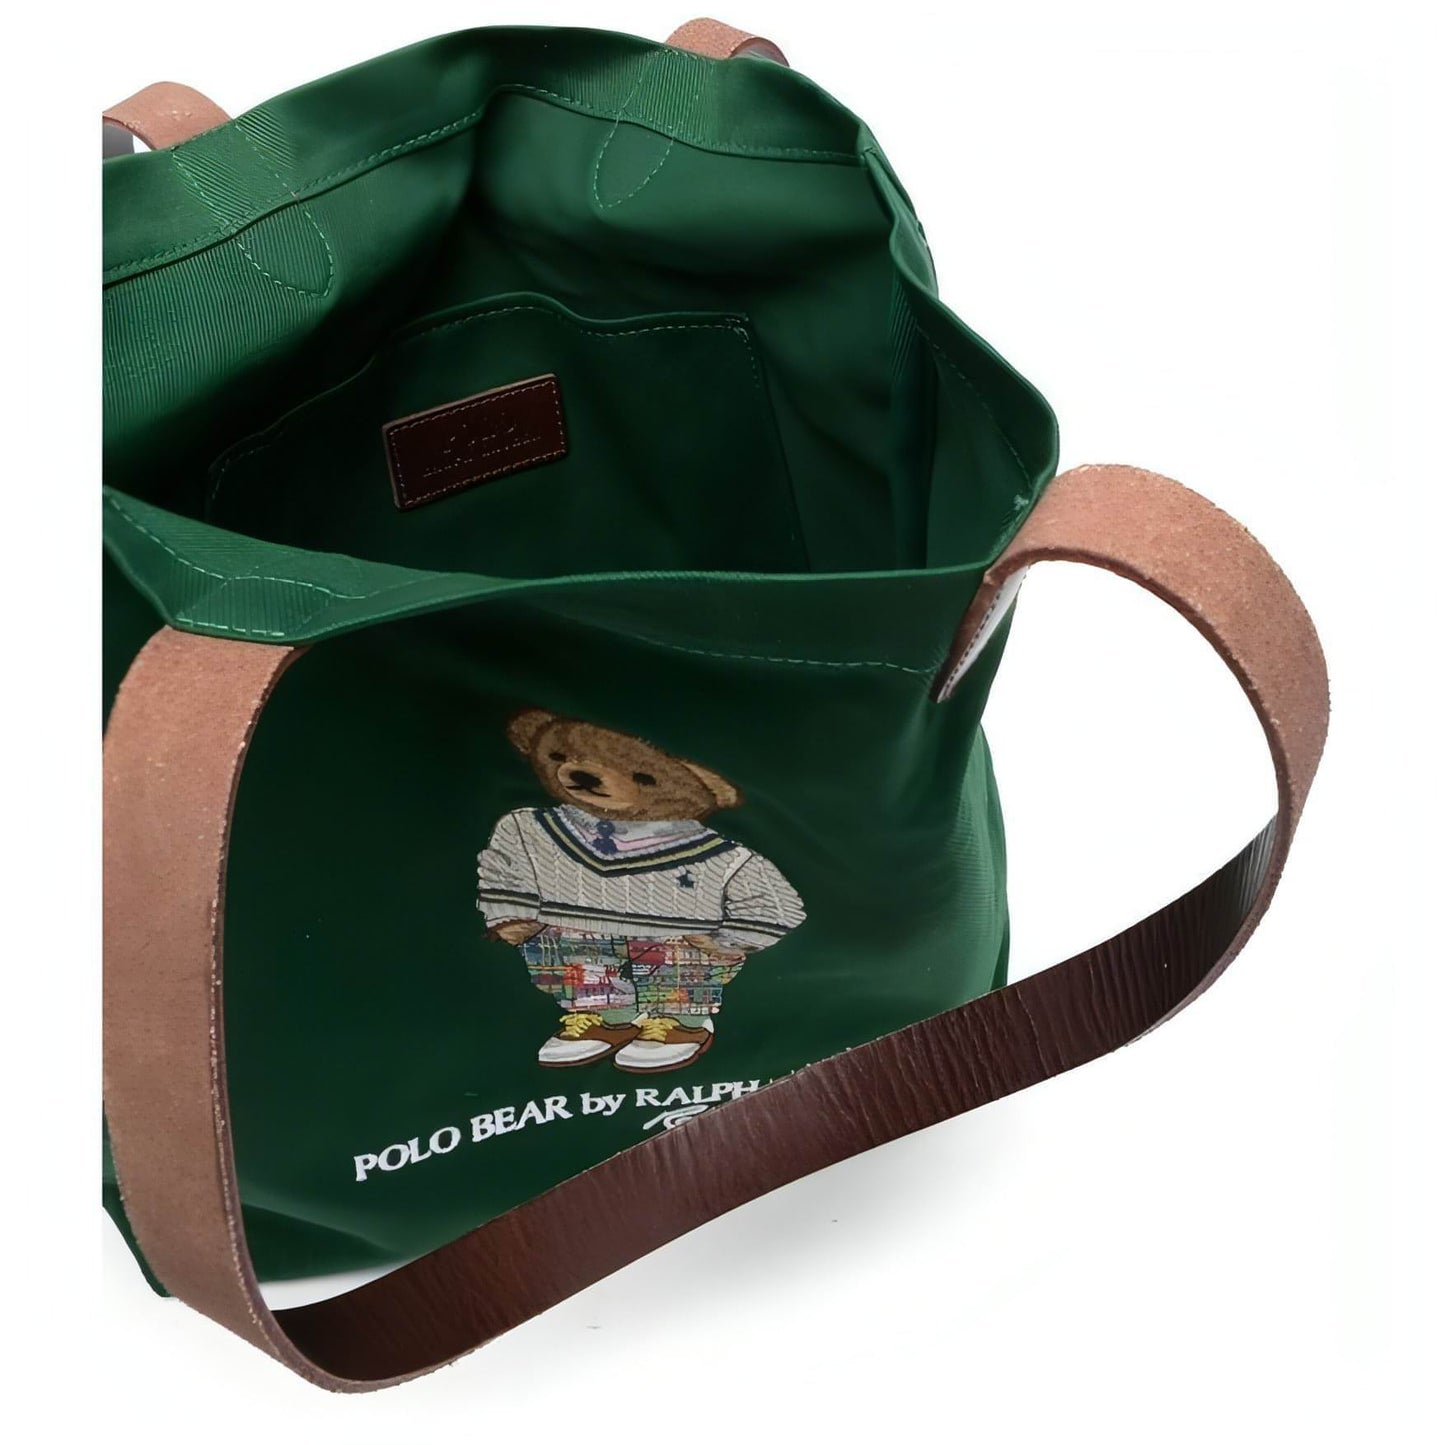 POLO RALPH LAUREN moteriškas žalias krepšys Medium tote bag